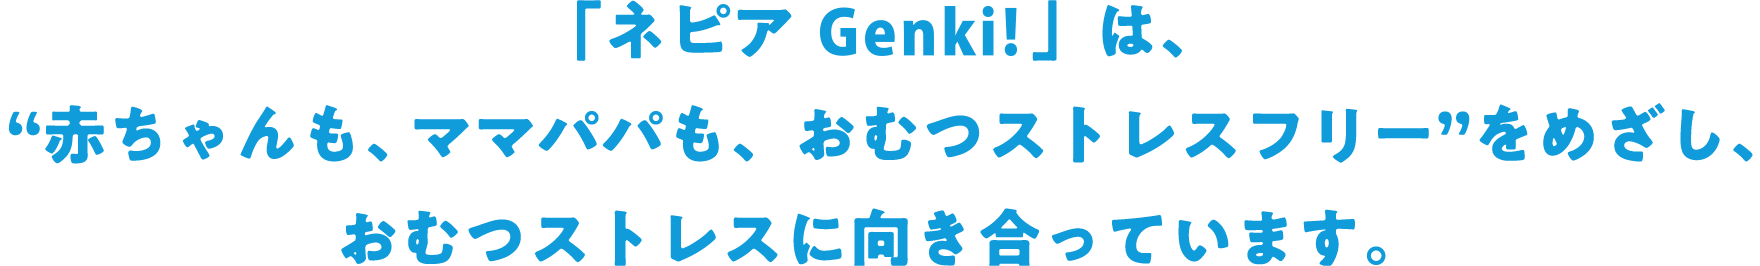 「ネピア Genki!」は、“赤ちゃんも、ママパパも、おむつストレスフリー”をめざし、おむつストレスに向き合っています。